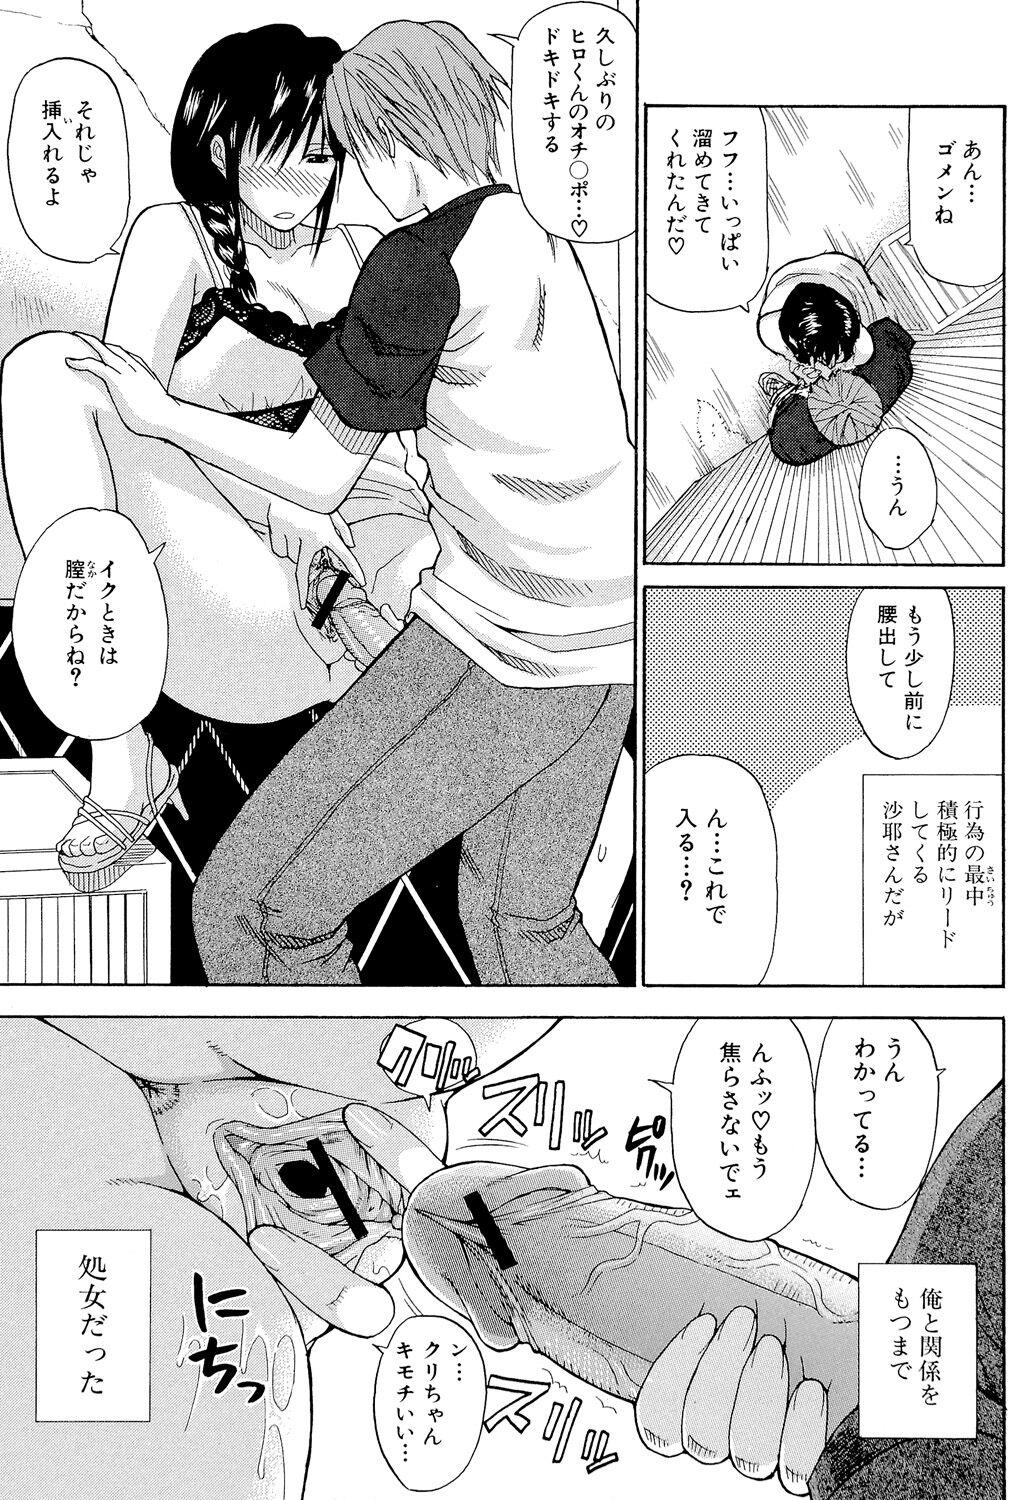 Asshole Ichizu na Toriko - A Earnest Captive Peludo - Page 10